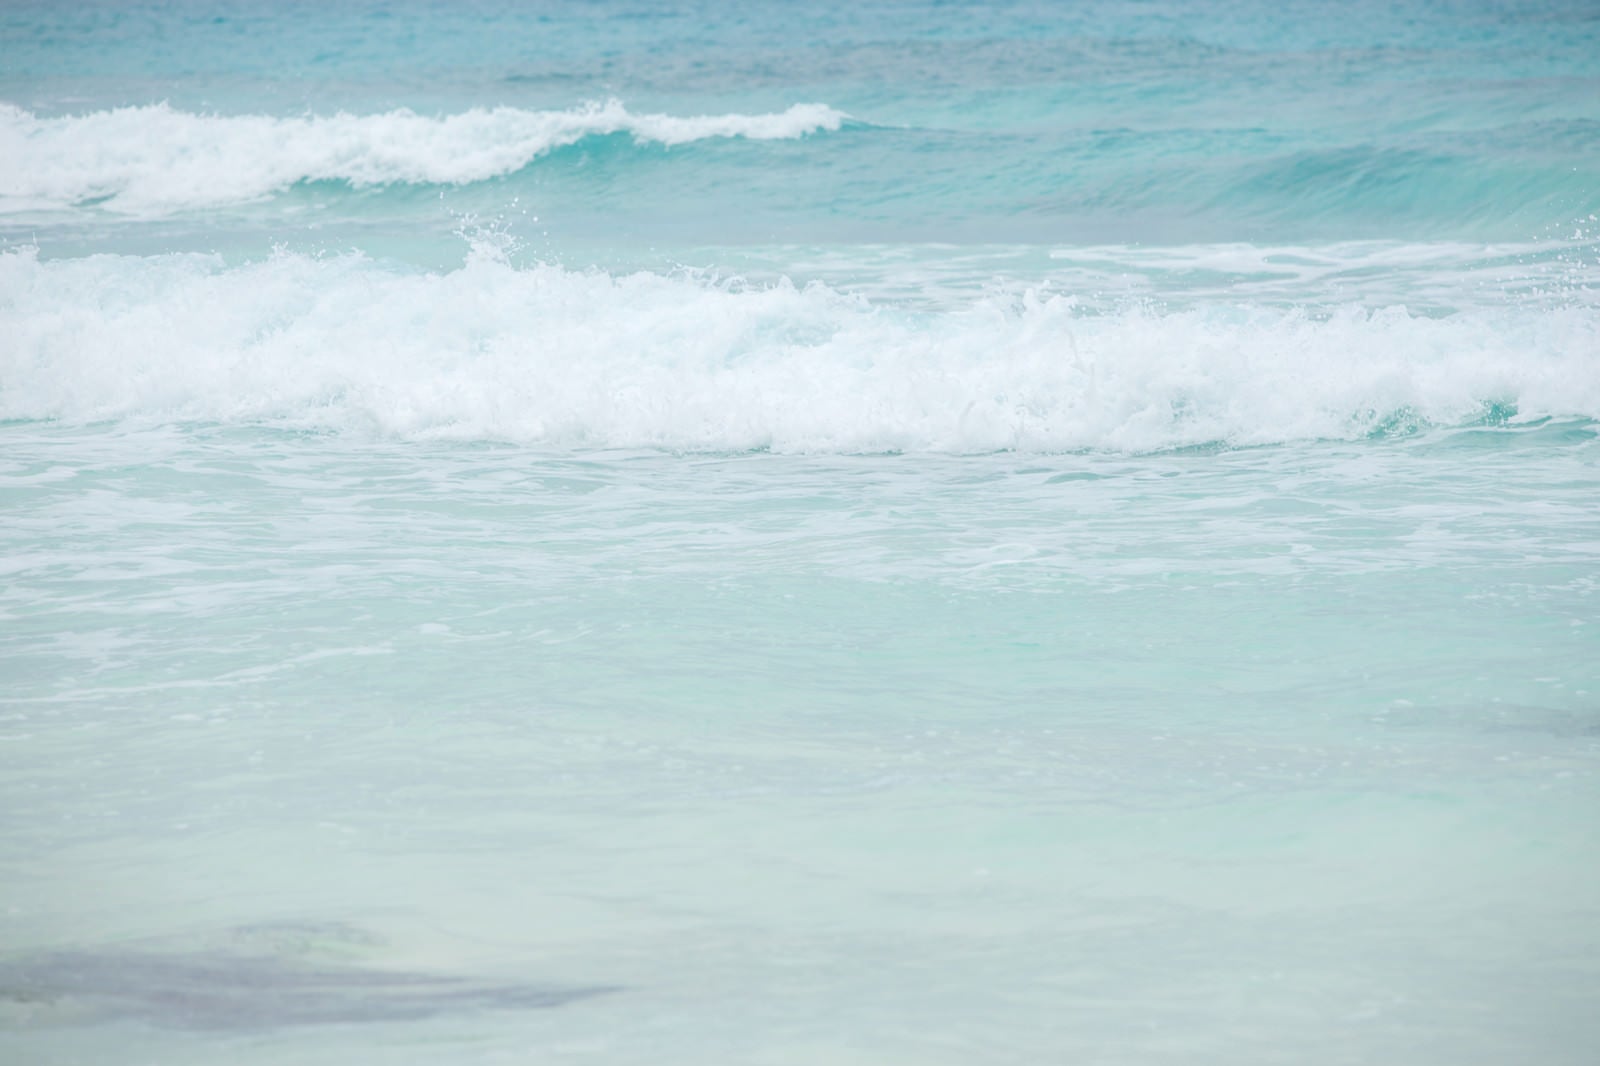 「宮古島の海と波」の写真